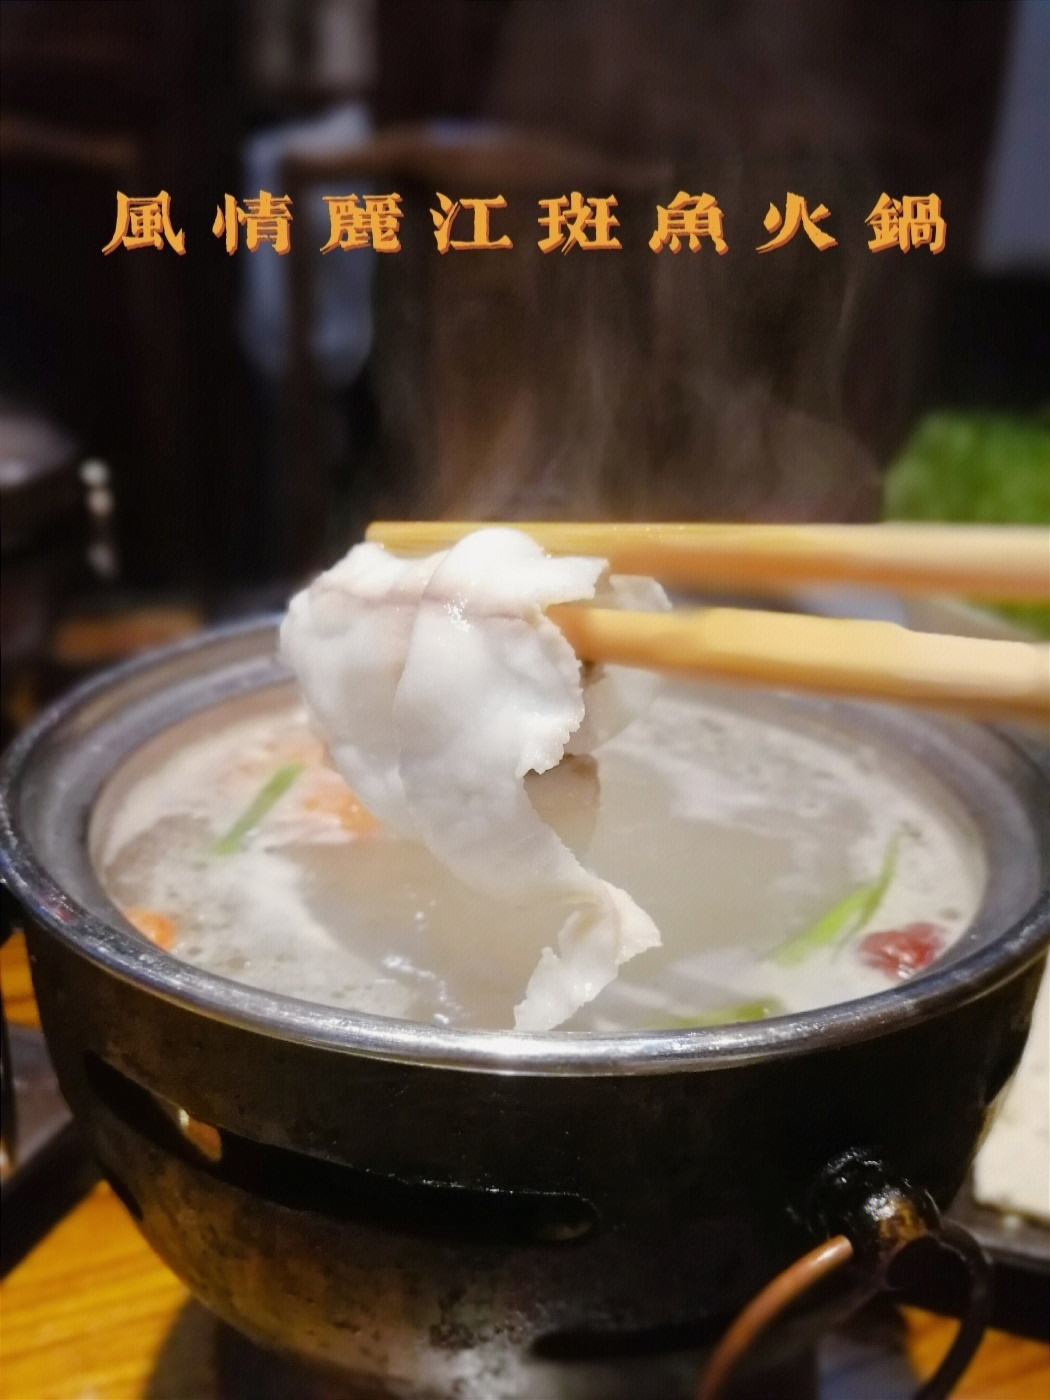 自制斑鱼火锅蘸料图片